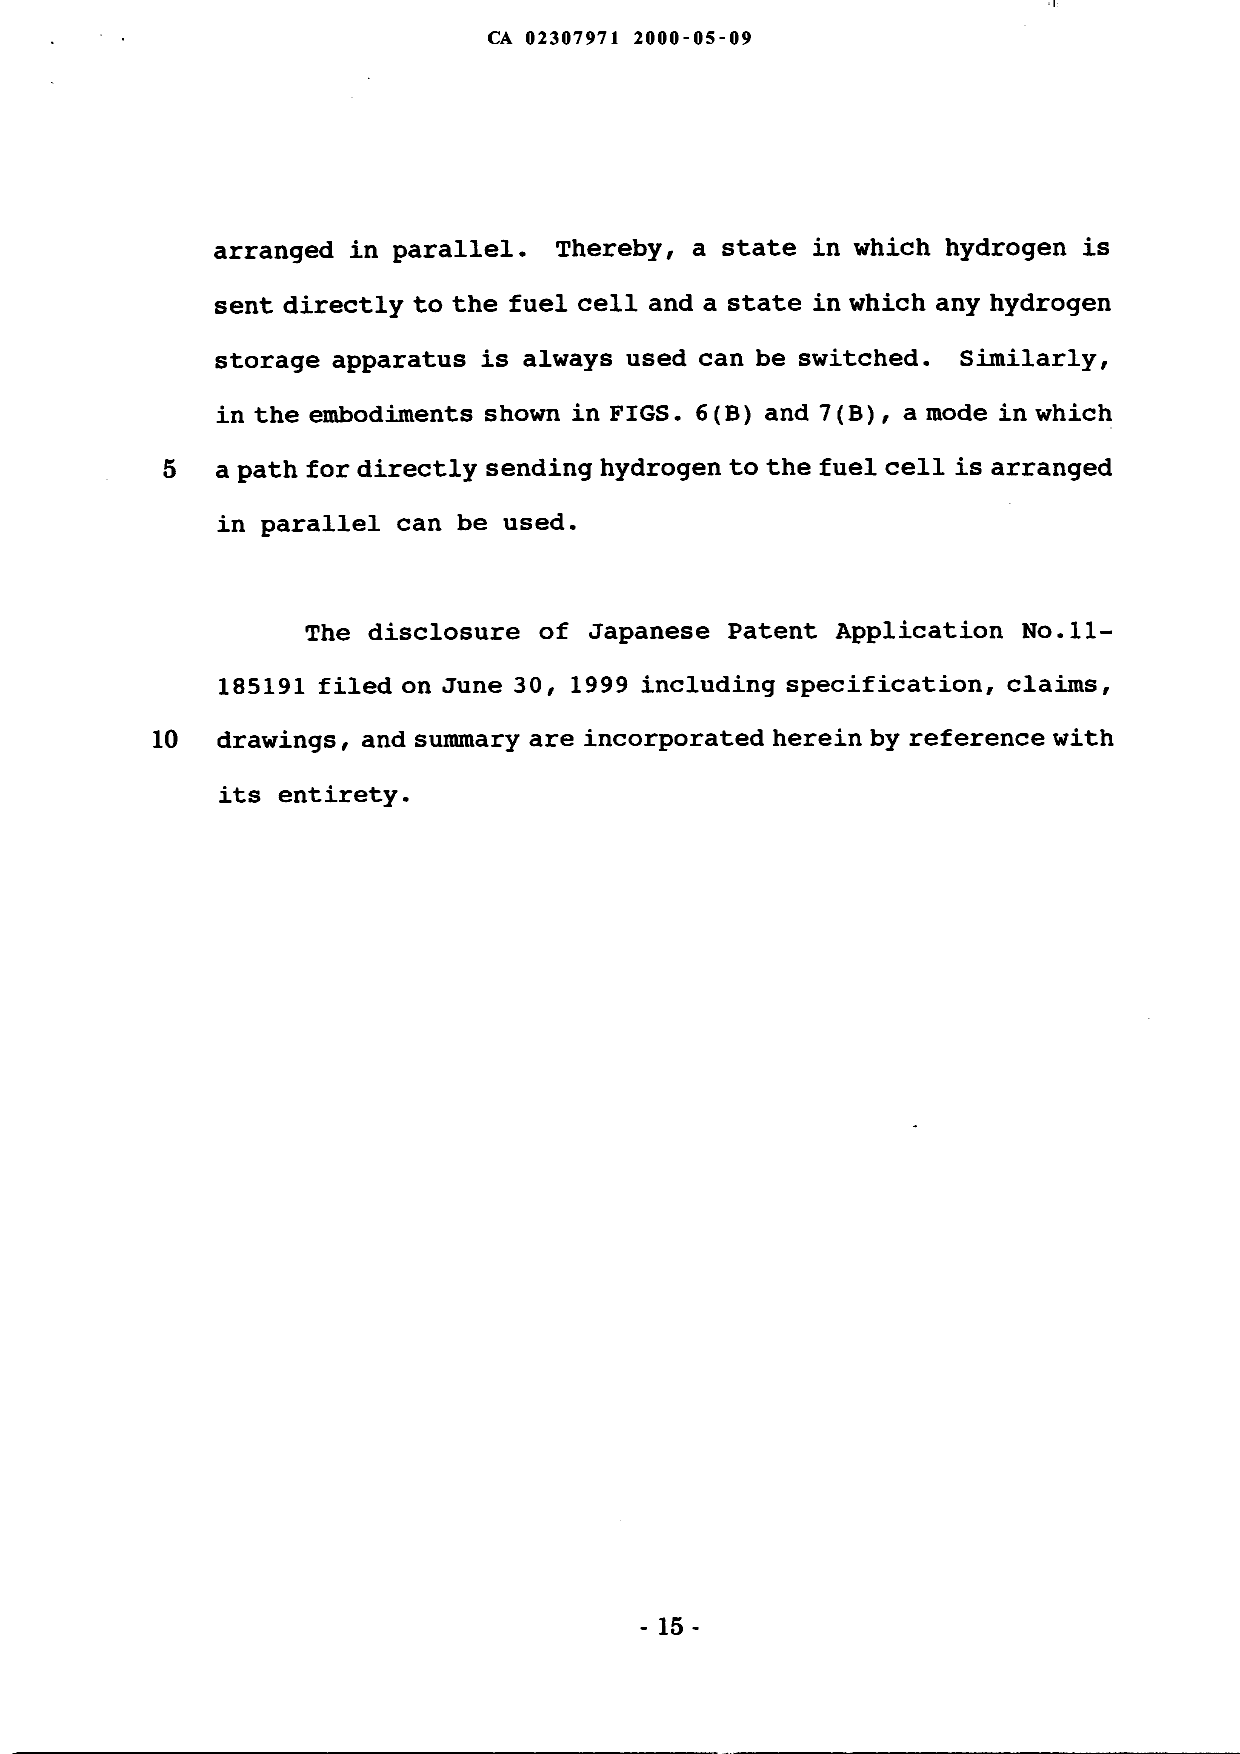 Canadian Patent Document 2307971. Description 19991209. Image 15 of 15